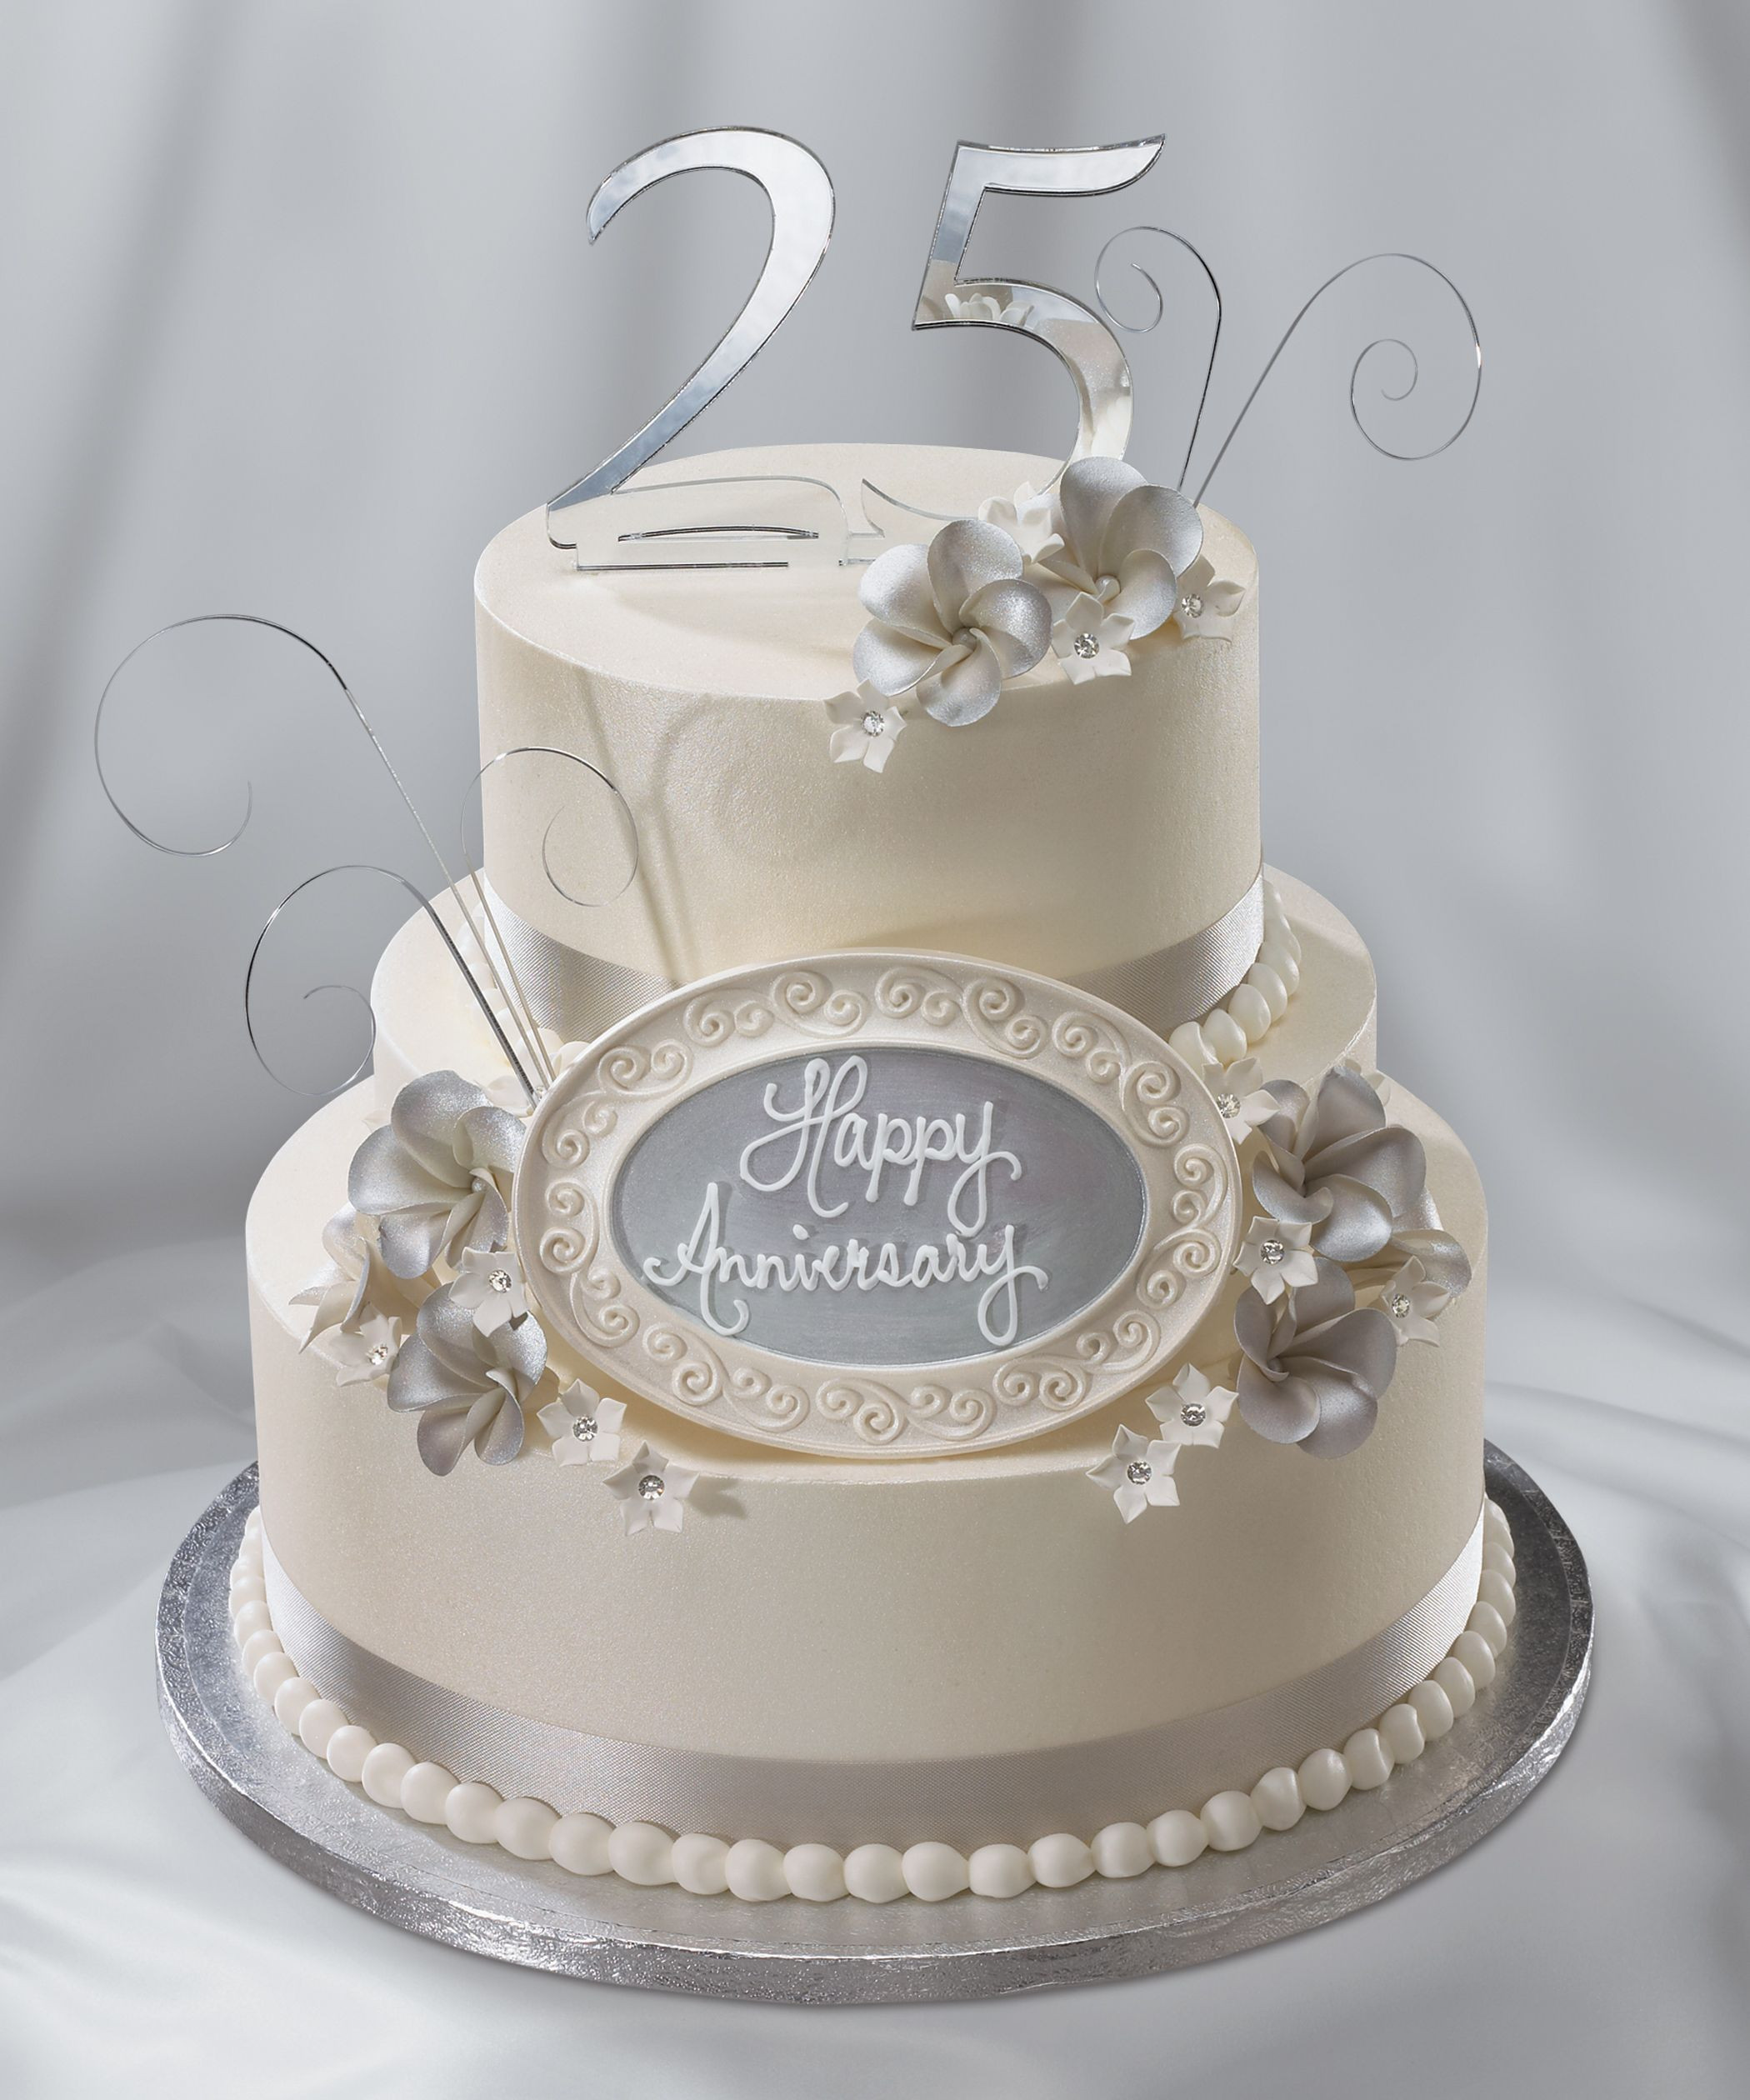 25Th Wedding Anniversary Gift Ideas
 25th Wedding Anniversary cake silver anniversary